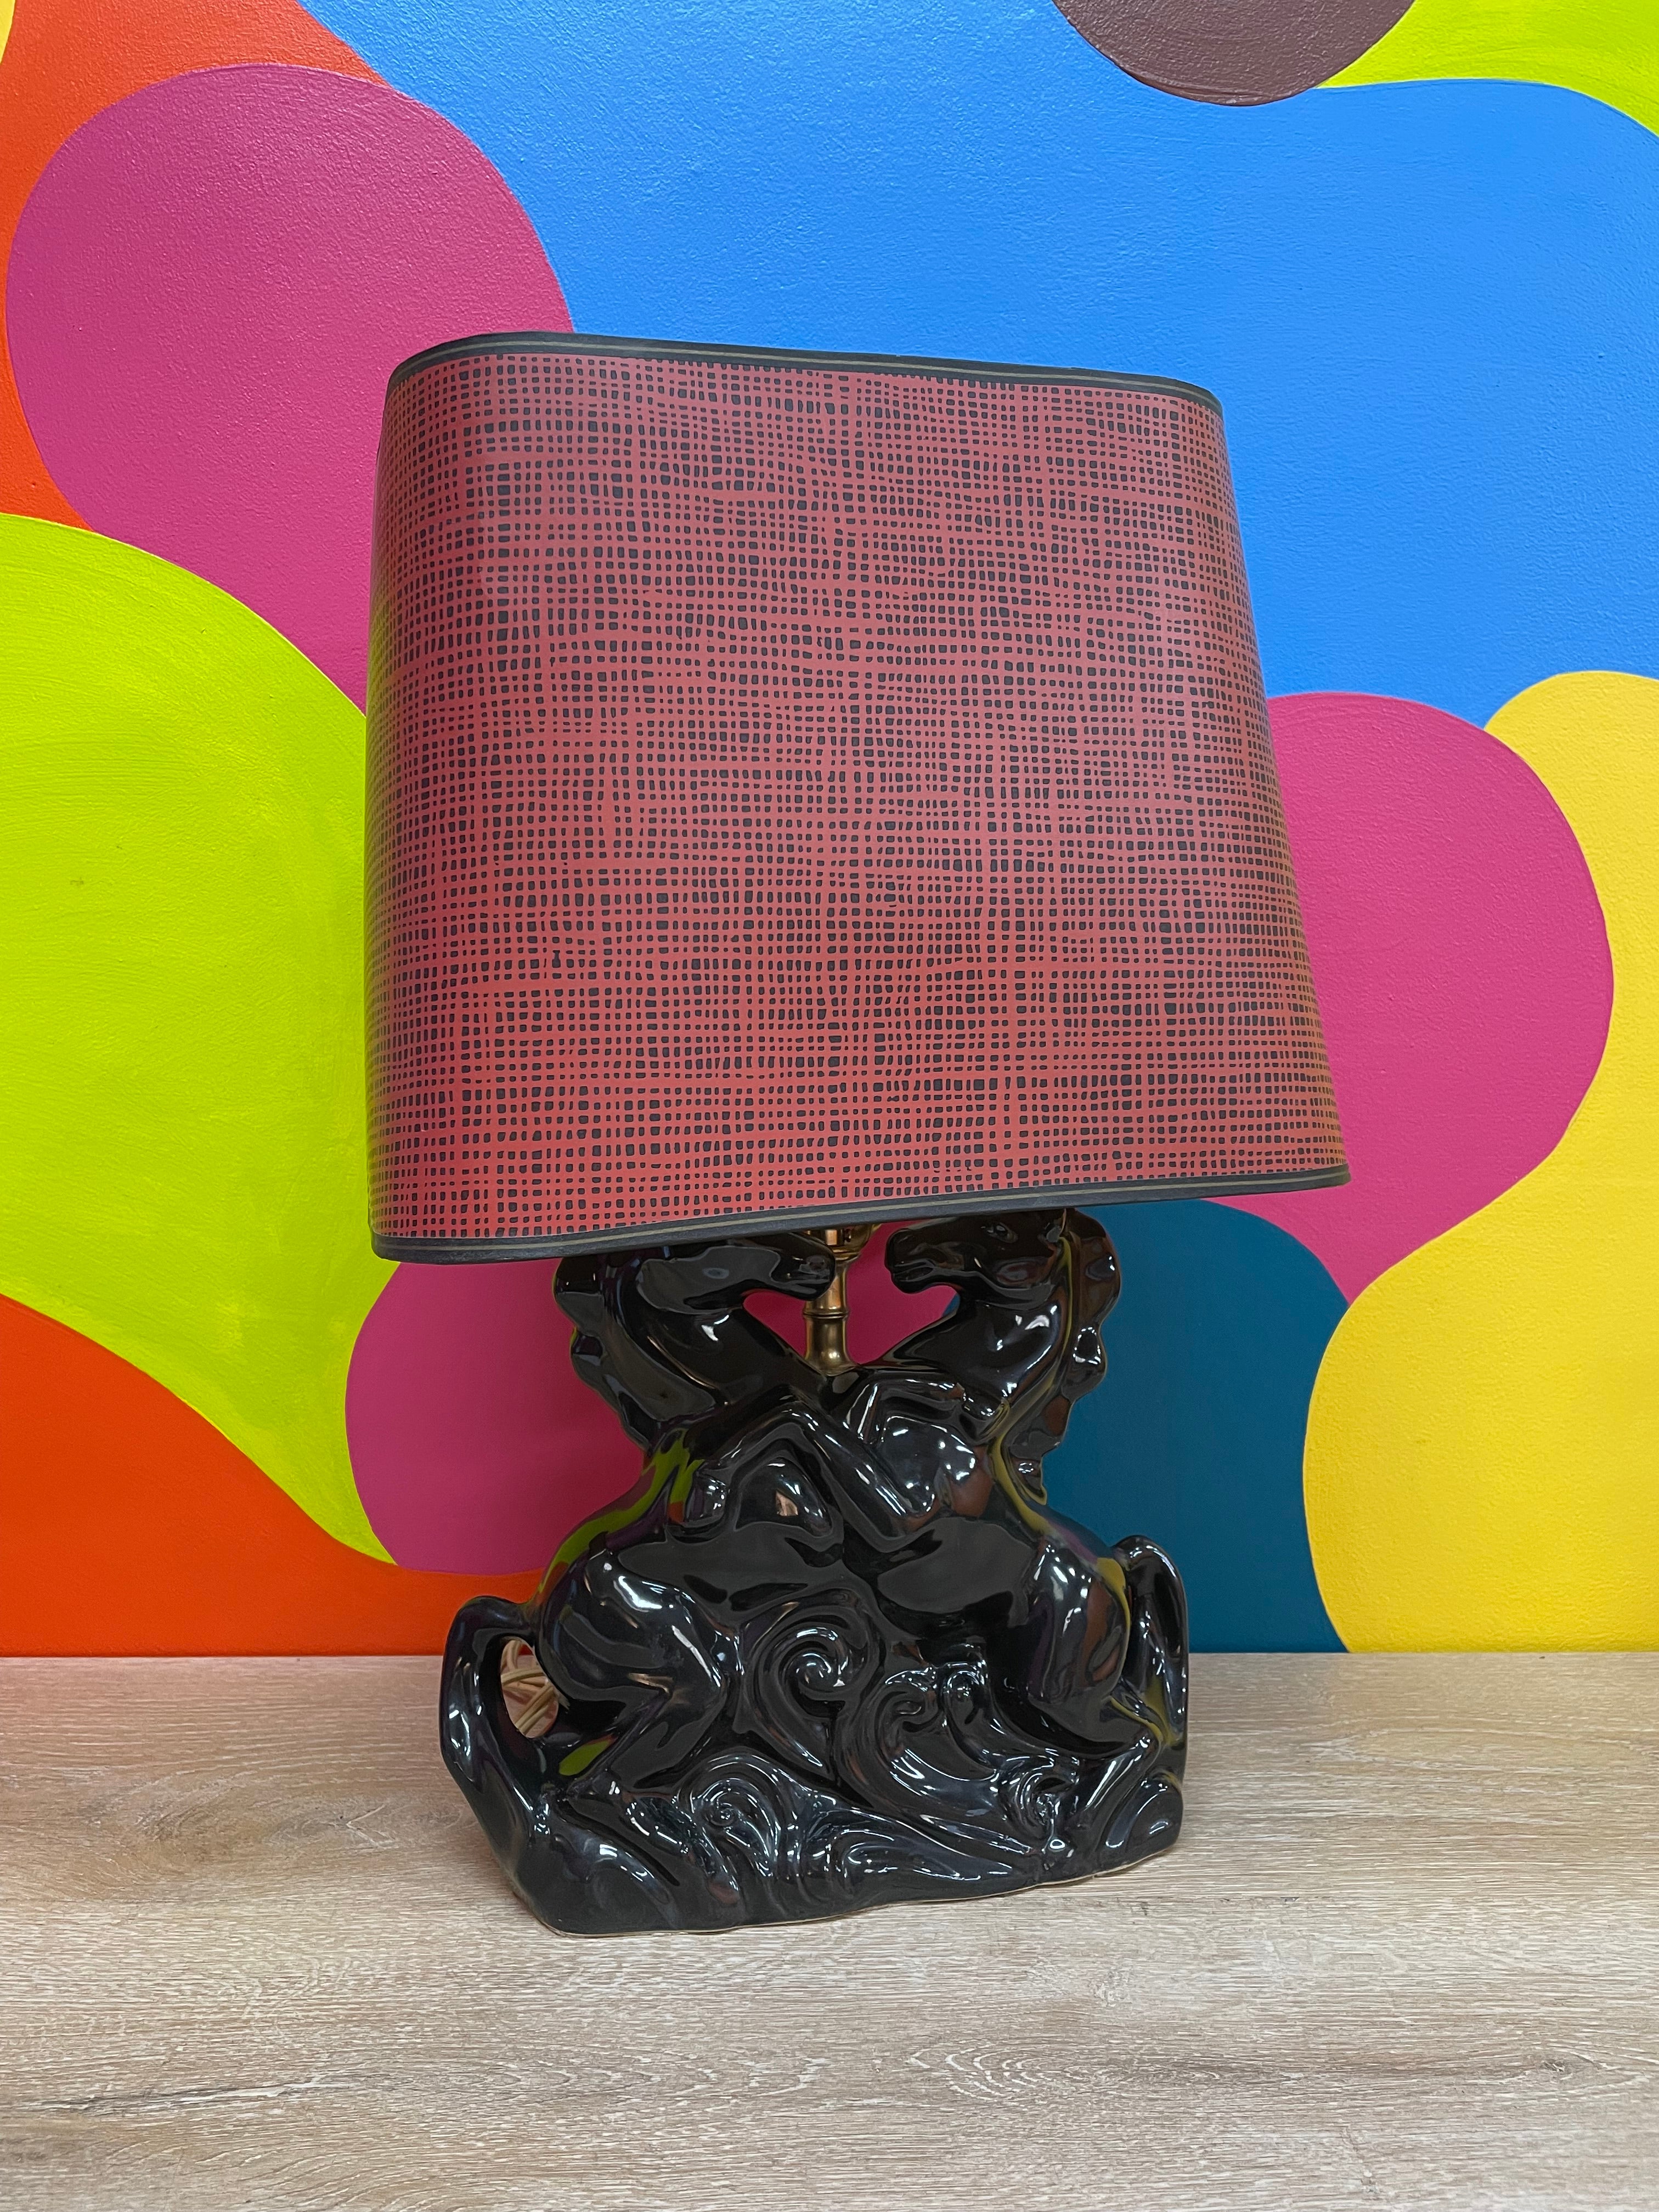 Ceramic Horse Lamp